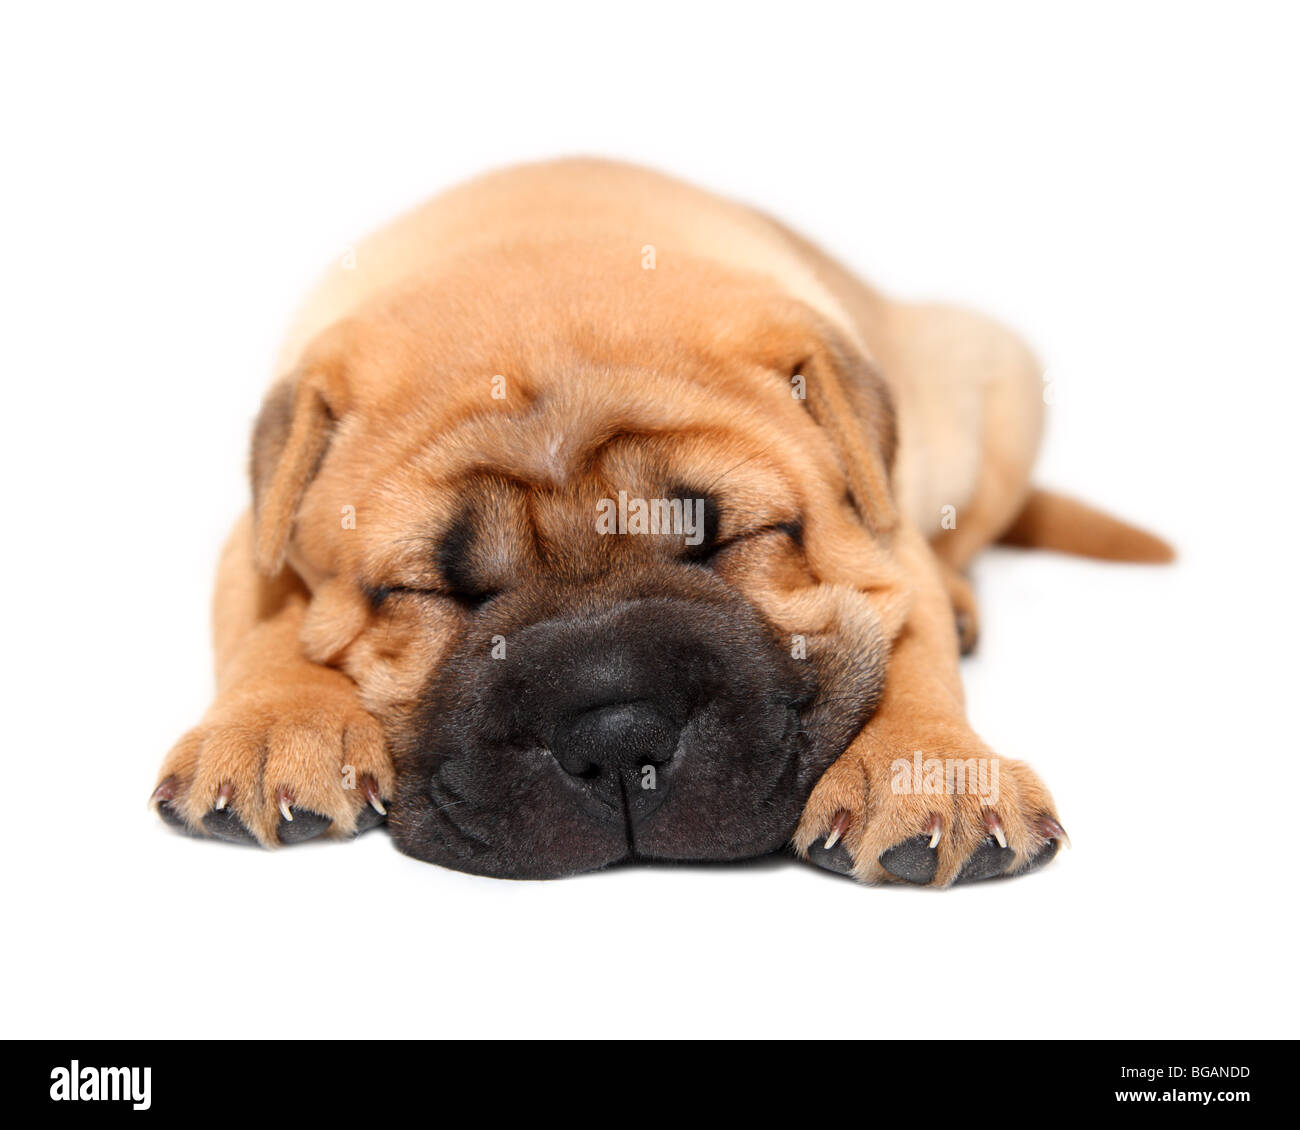 shar pei puppy dog sleeping isolated on white Stock Photo